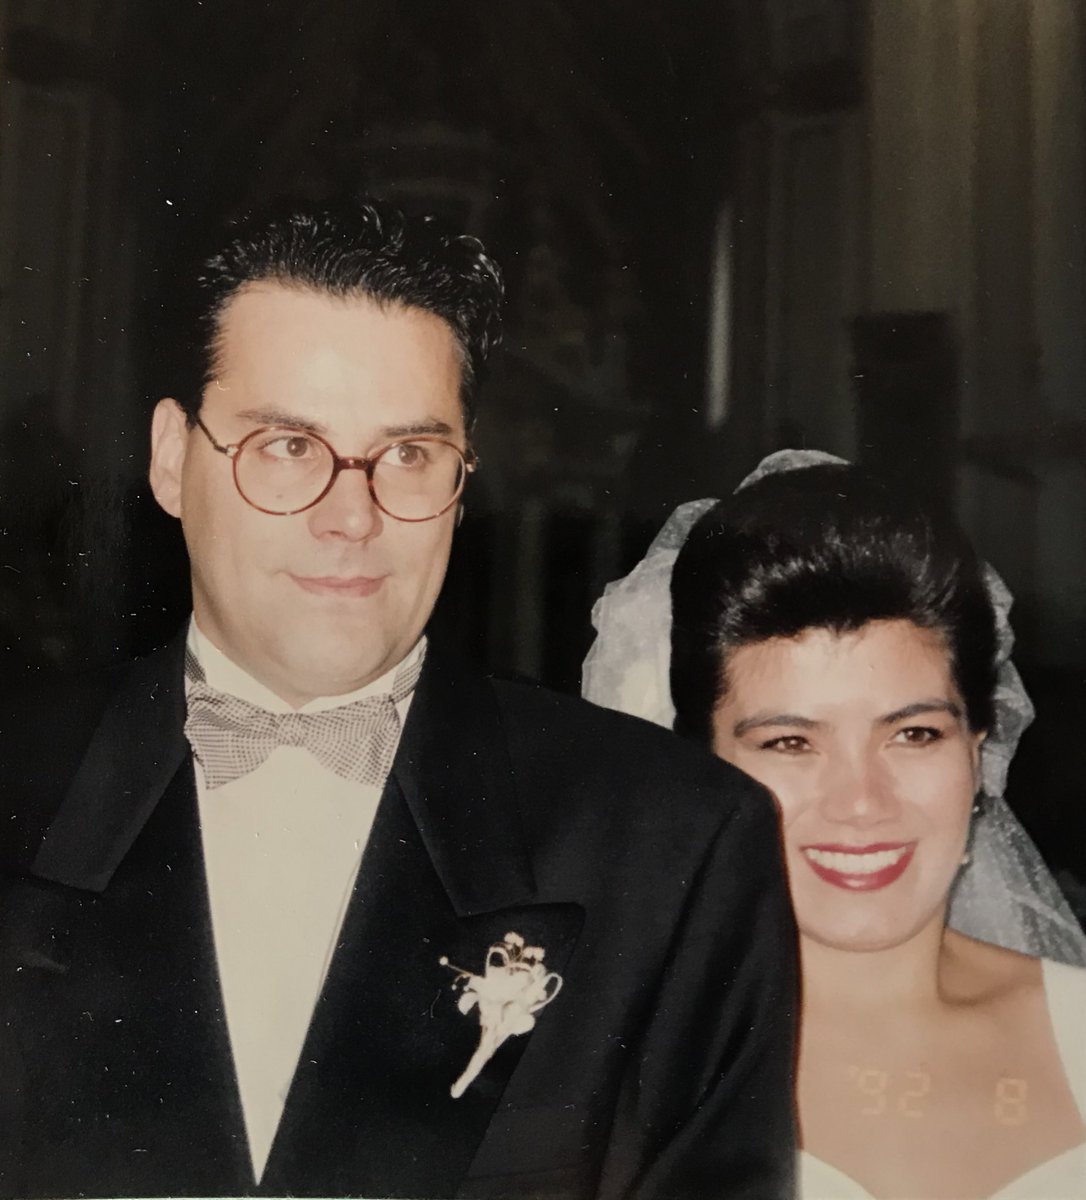 Después mi abuela fue a visitar a mi madre a Portugal, mi papá pidió bien “la mano” y la boda se hizo en grande en Cuernavaca